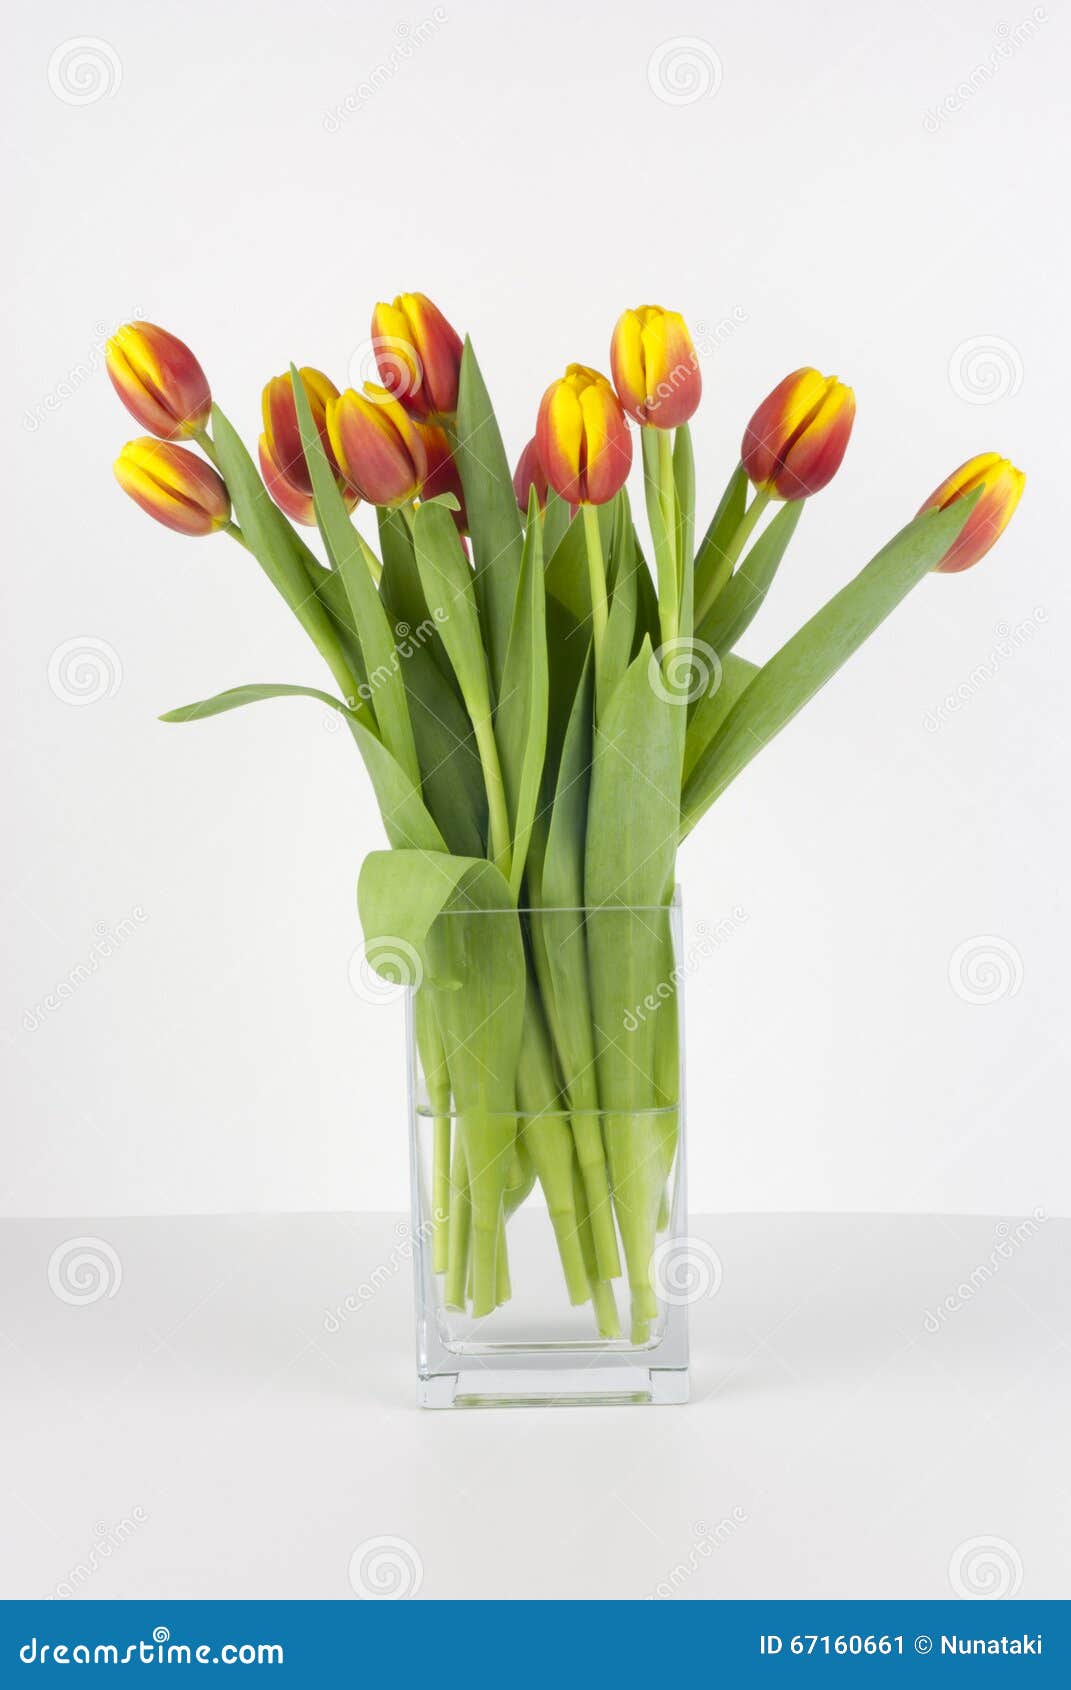 Нужно ли подрезать тюльпаны в вазе. Подрезка тюльпанов в вазе. Как подрезать тюльпаны в вазе. Как подрезать тюльпаны в вазу. Надо ли подрезать тюльпаны в вазе.